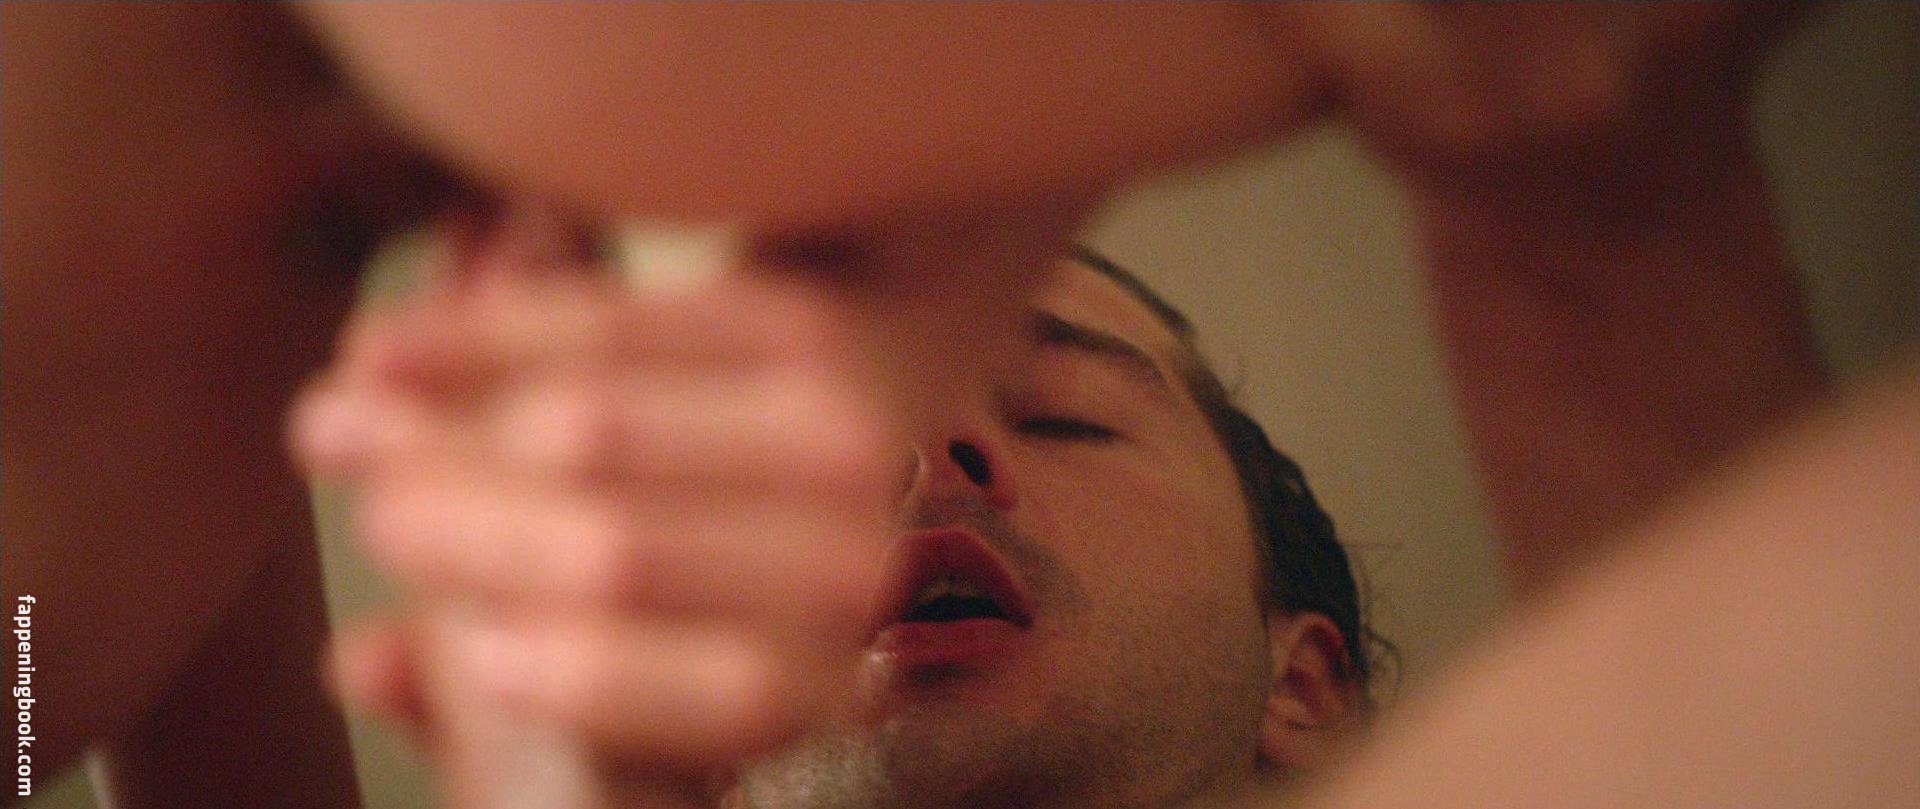 Подборка секс сцен из фильма Нимфоманка +порно фото